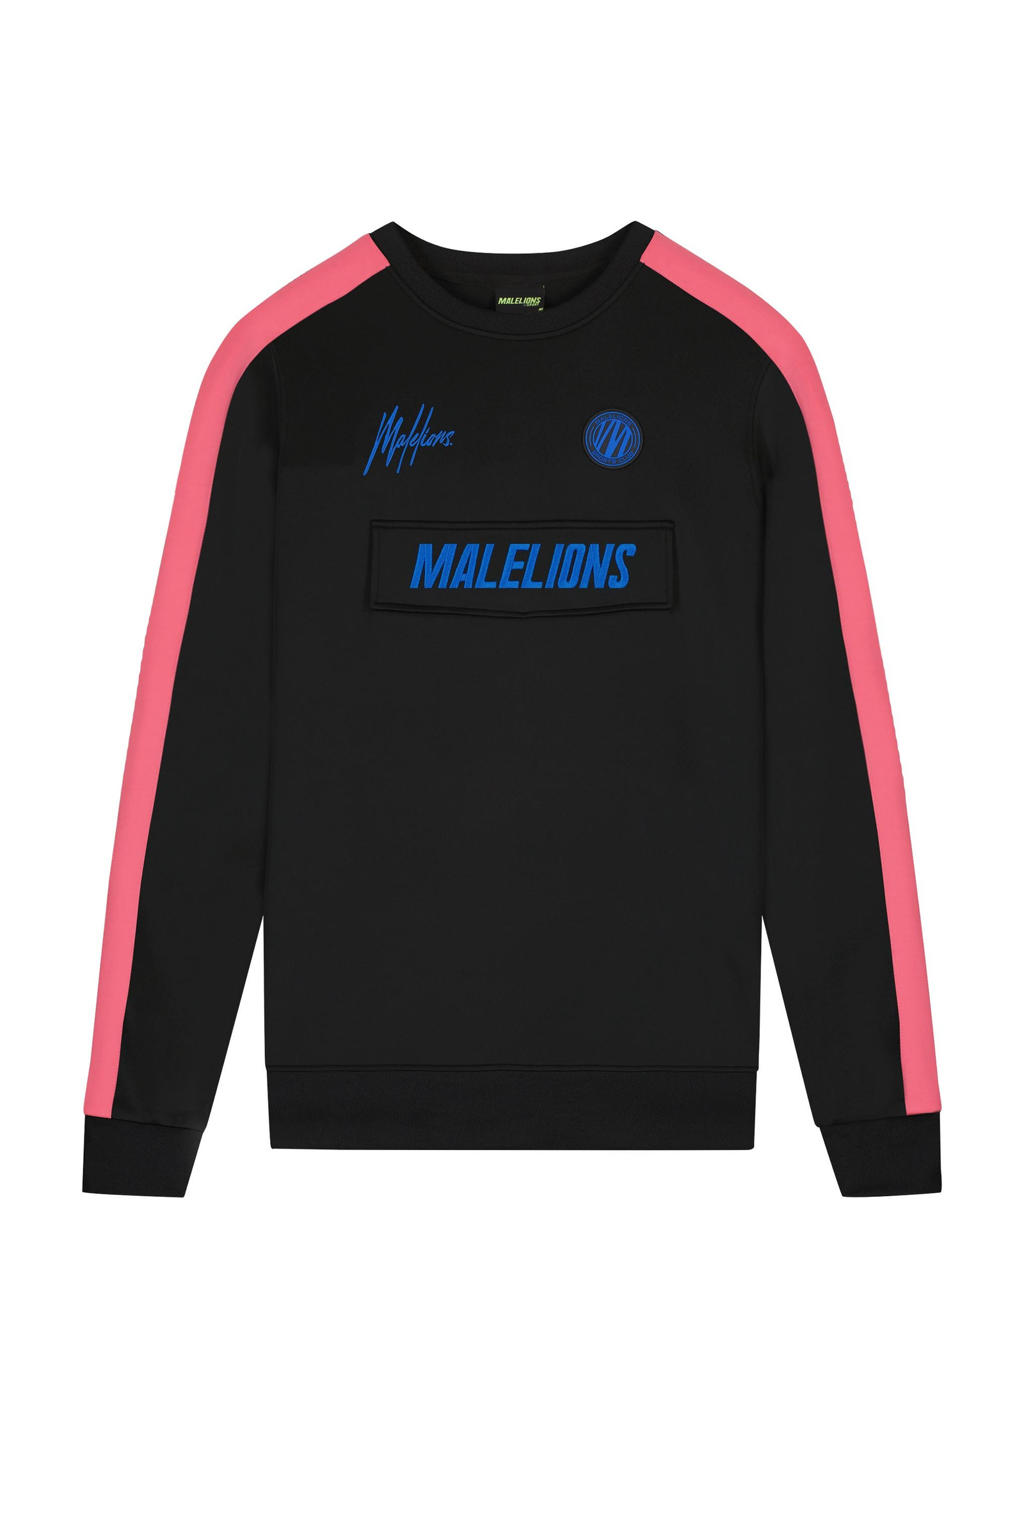 Malelions sweater zwart/roze